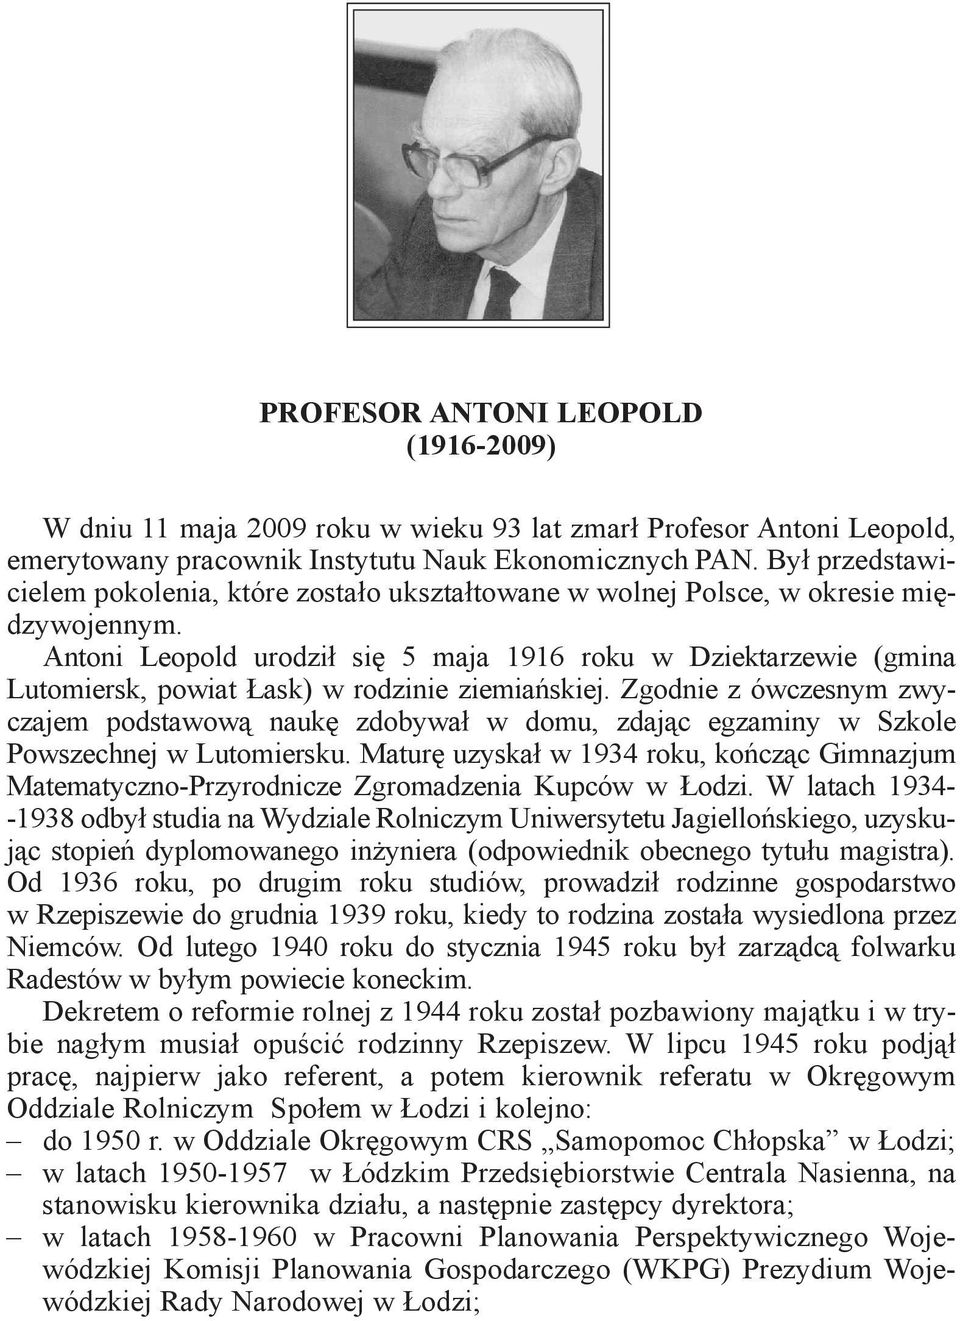 Antoni Leopold urodził się 5 maja 1916 roku w Dziektarzewie (gmina Lutomiersk, powiat Łask) w rodzinie ziemiańskiej.